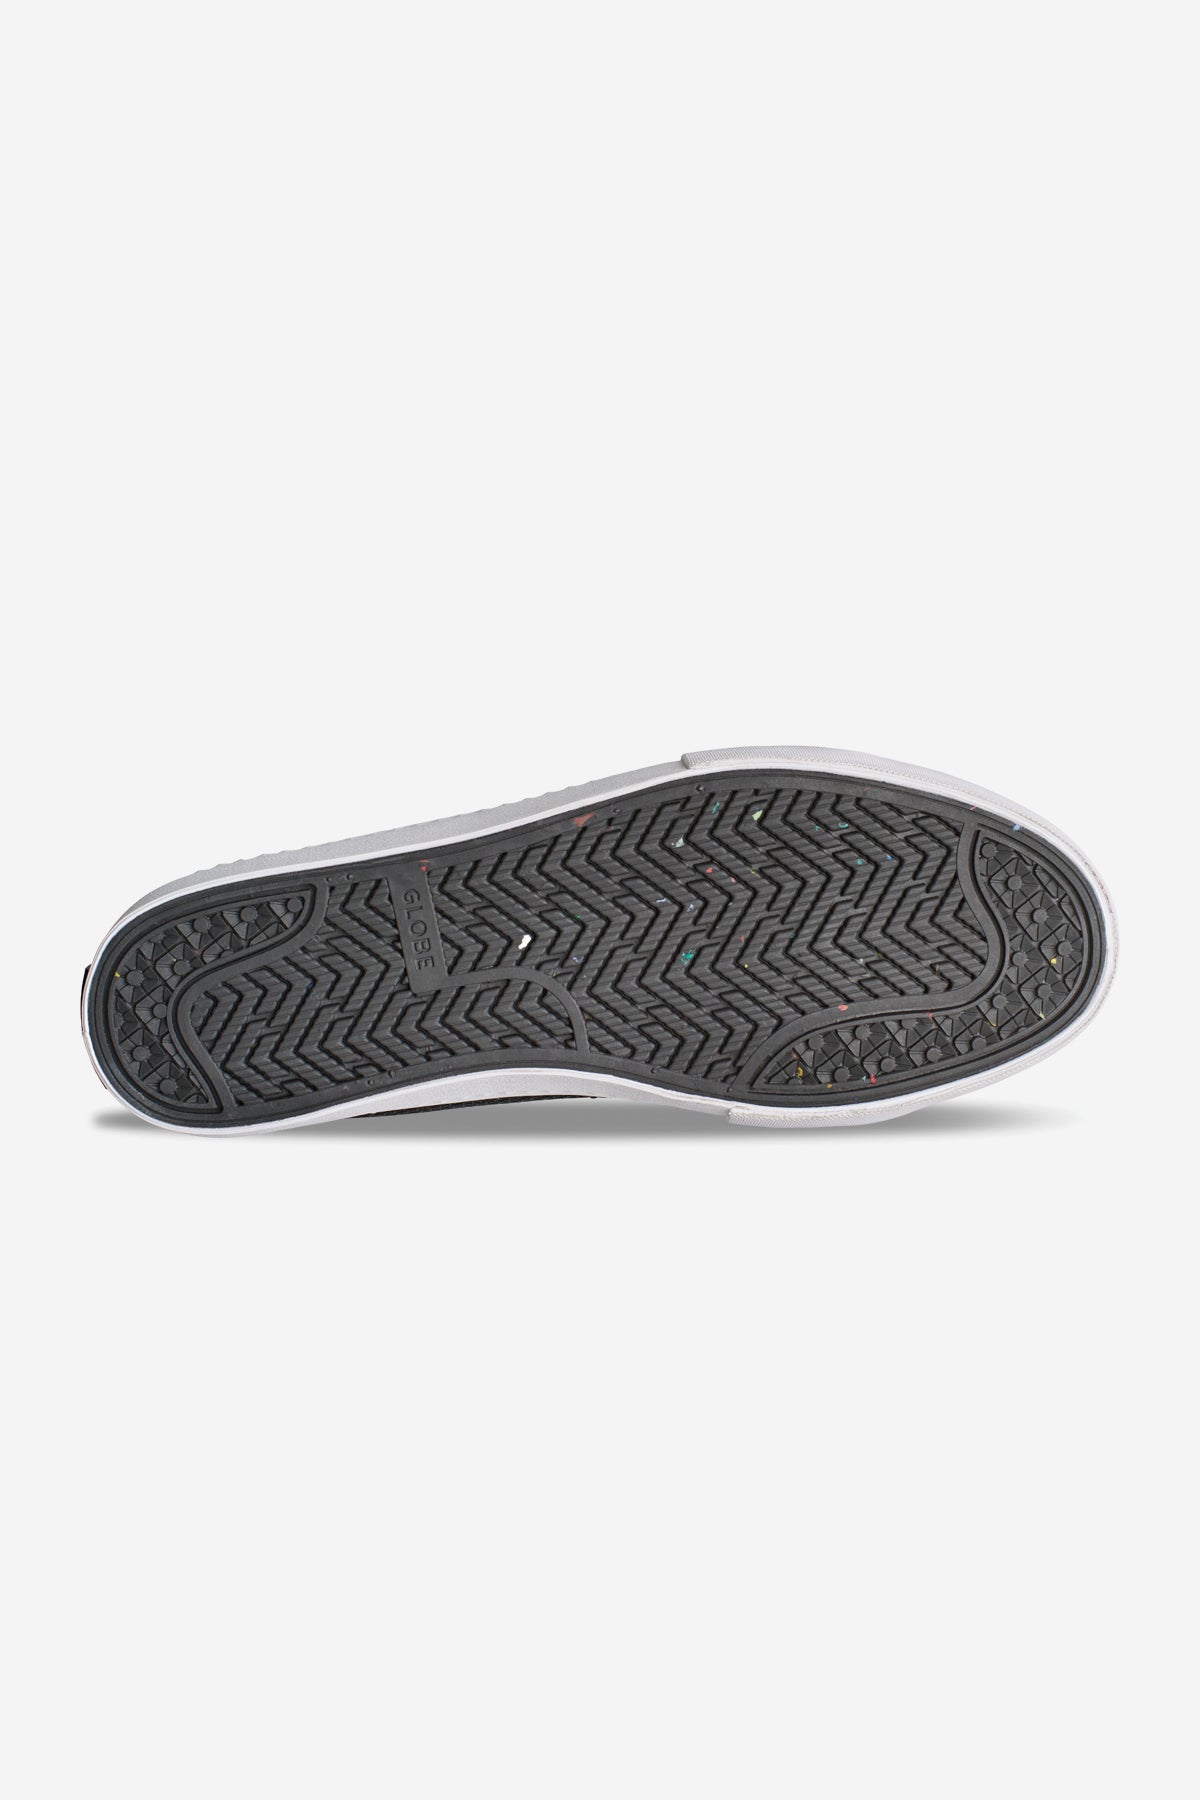 Globe - La Knit - Black/White - Skate Shoes